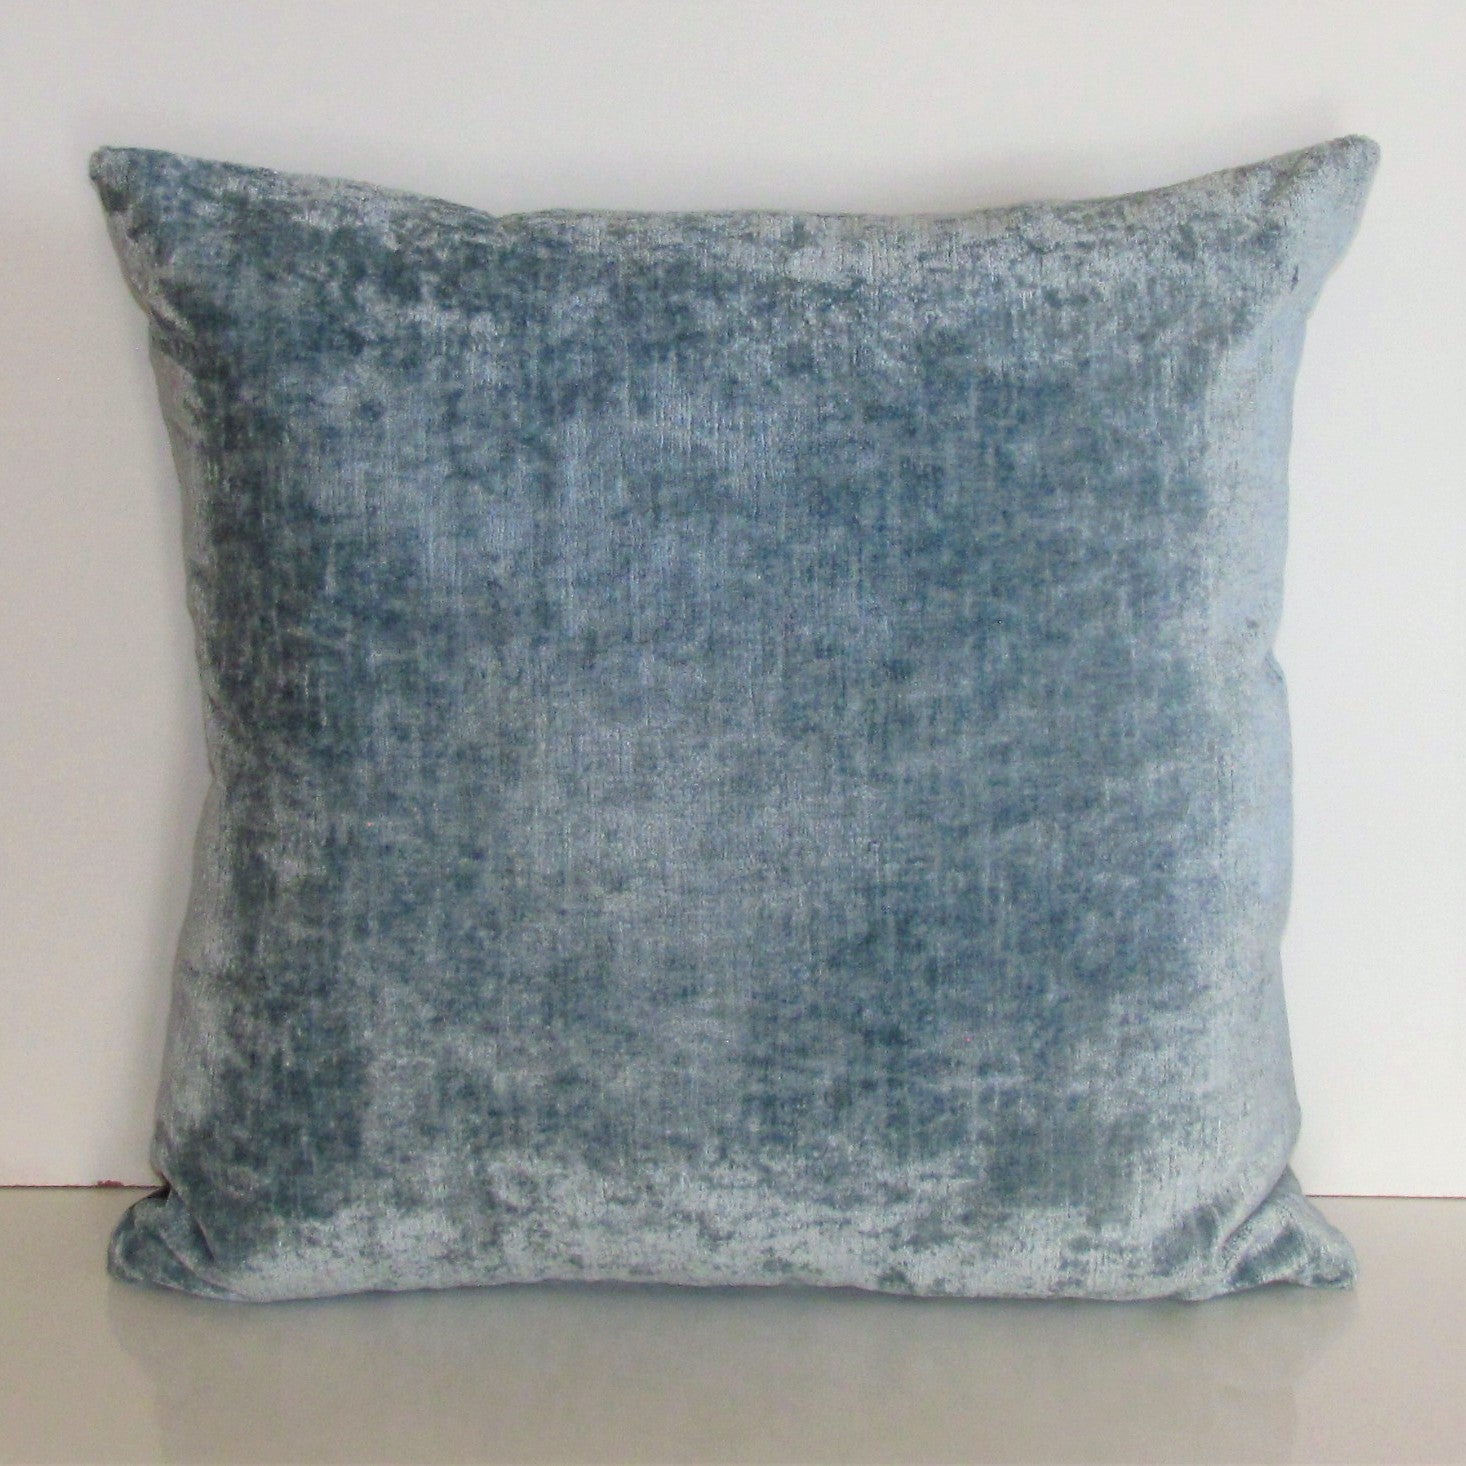 Bespoke Powder Blue luxury Italian velvet cushion cover